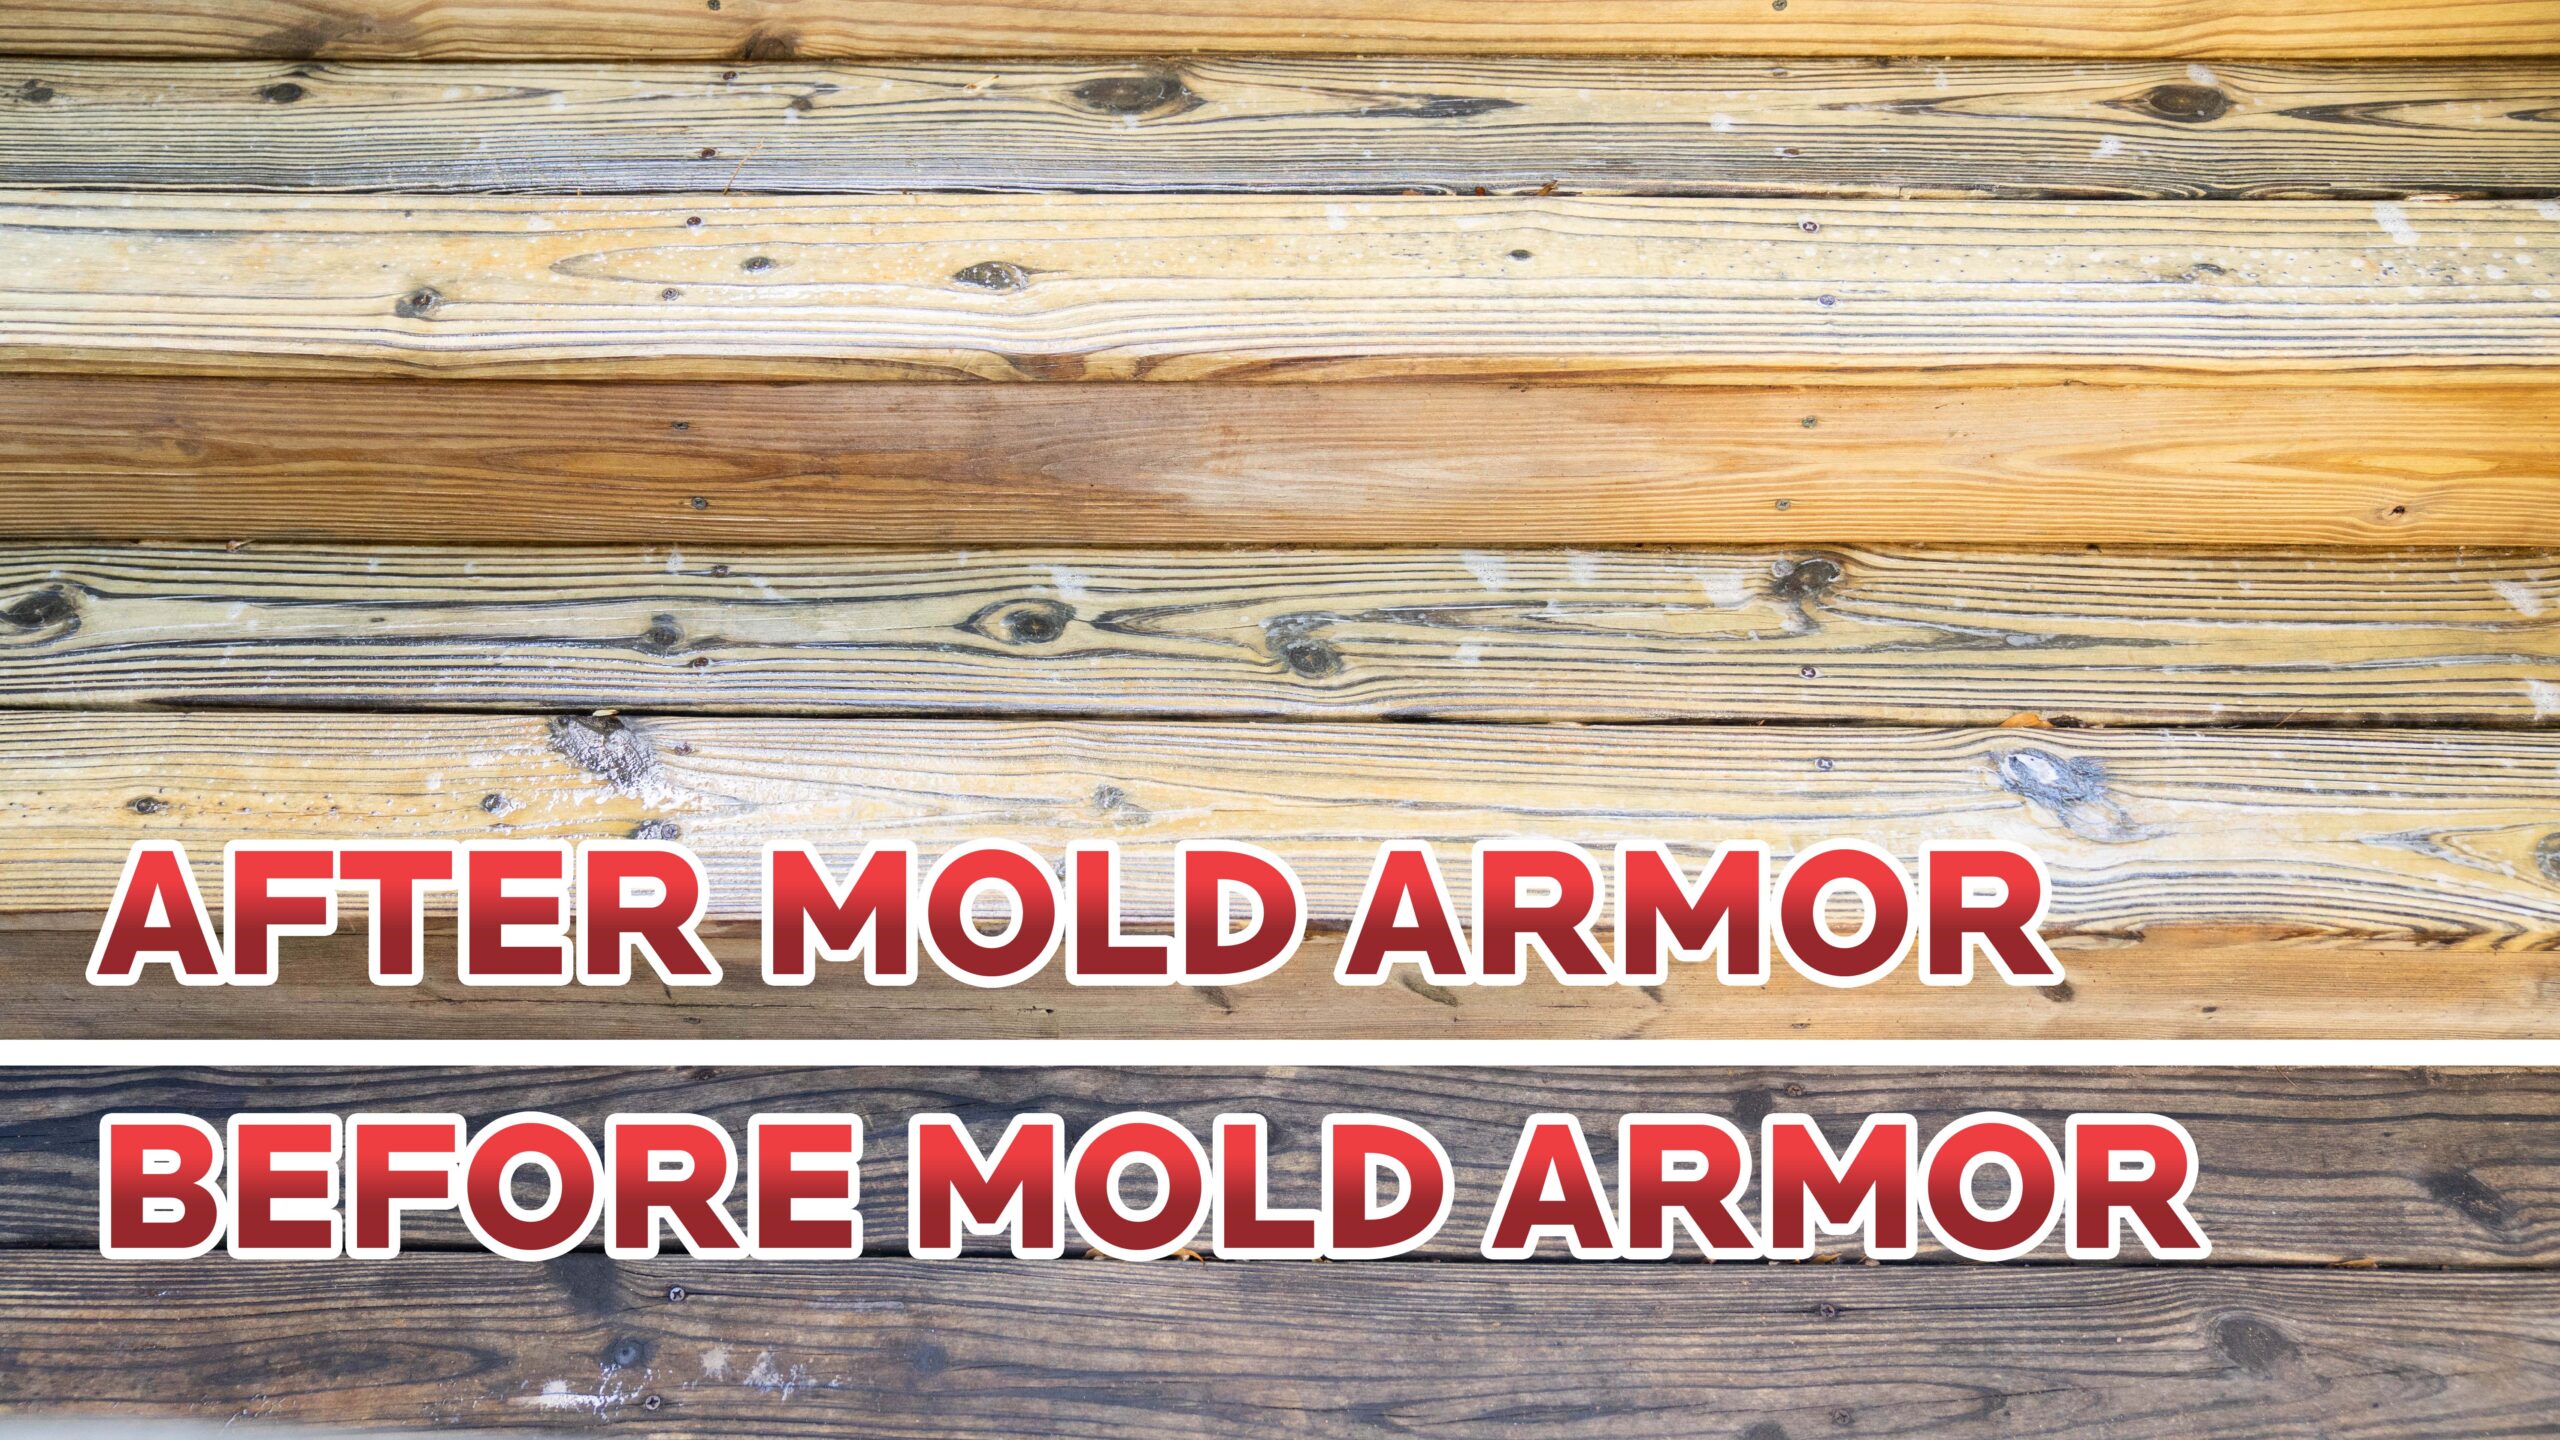 Mold Armor FG51264 64 oz E-Z Deck, Fence & Patio Wash Hose End